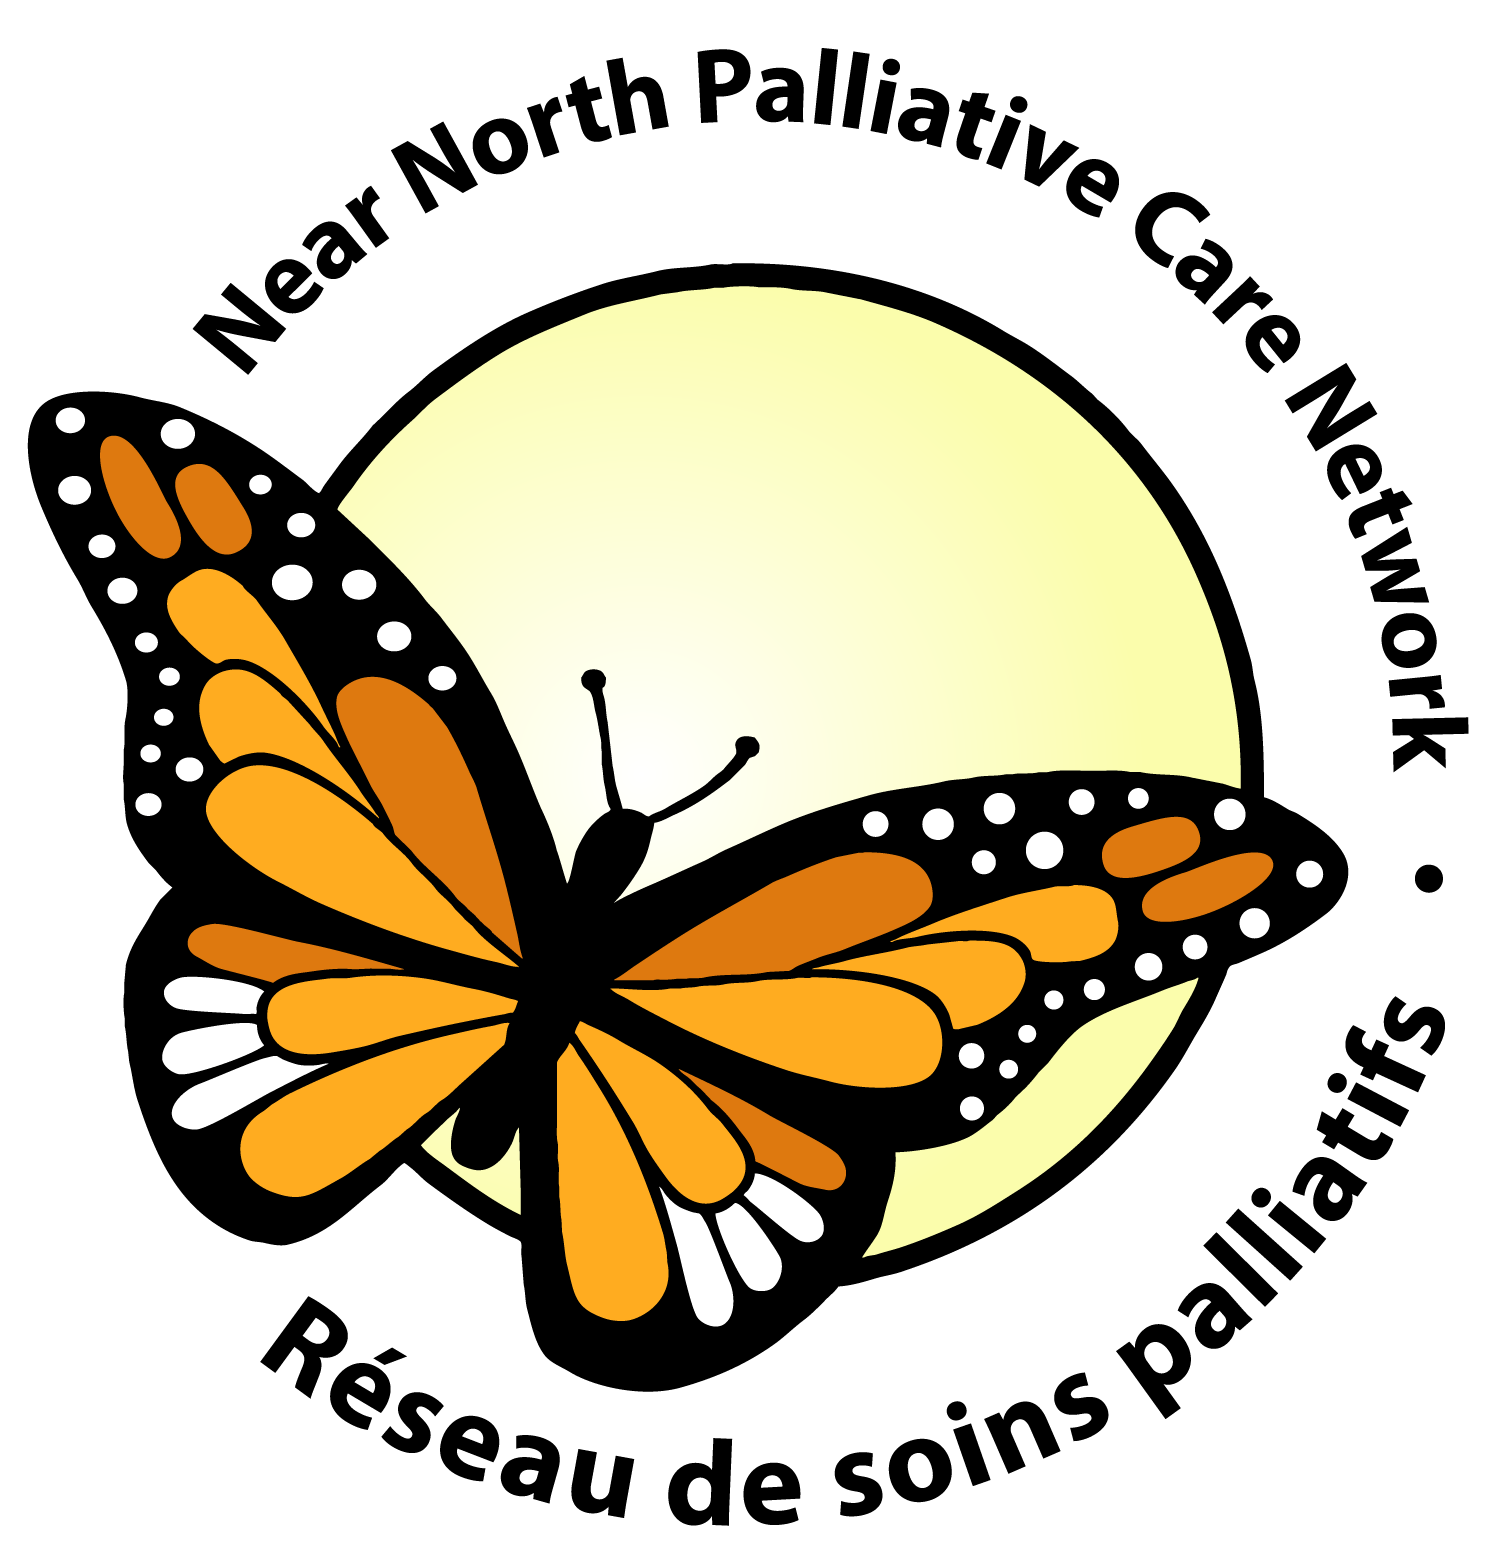 Near North Palliative Care Network Logo